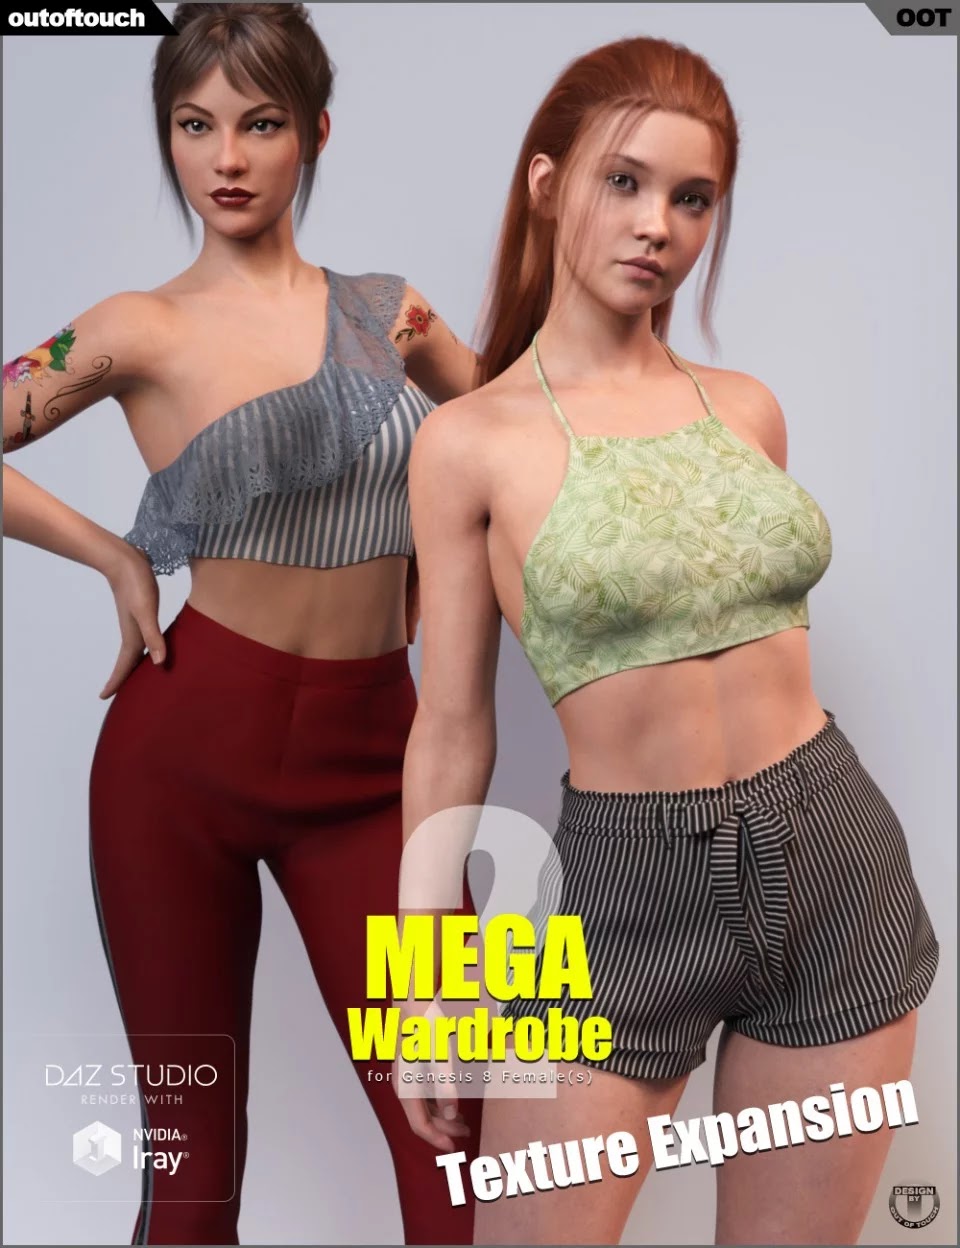 Texture Expansion for MEGA Wardrobe 2_DAZ3D下载站